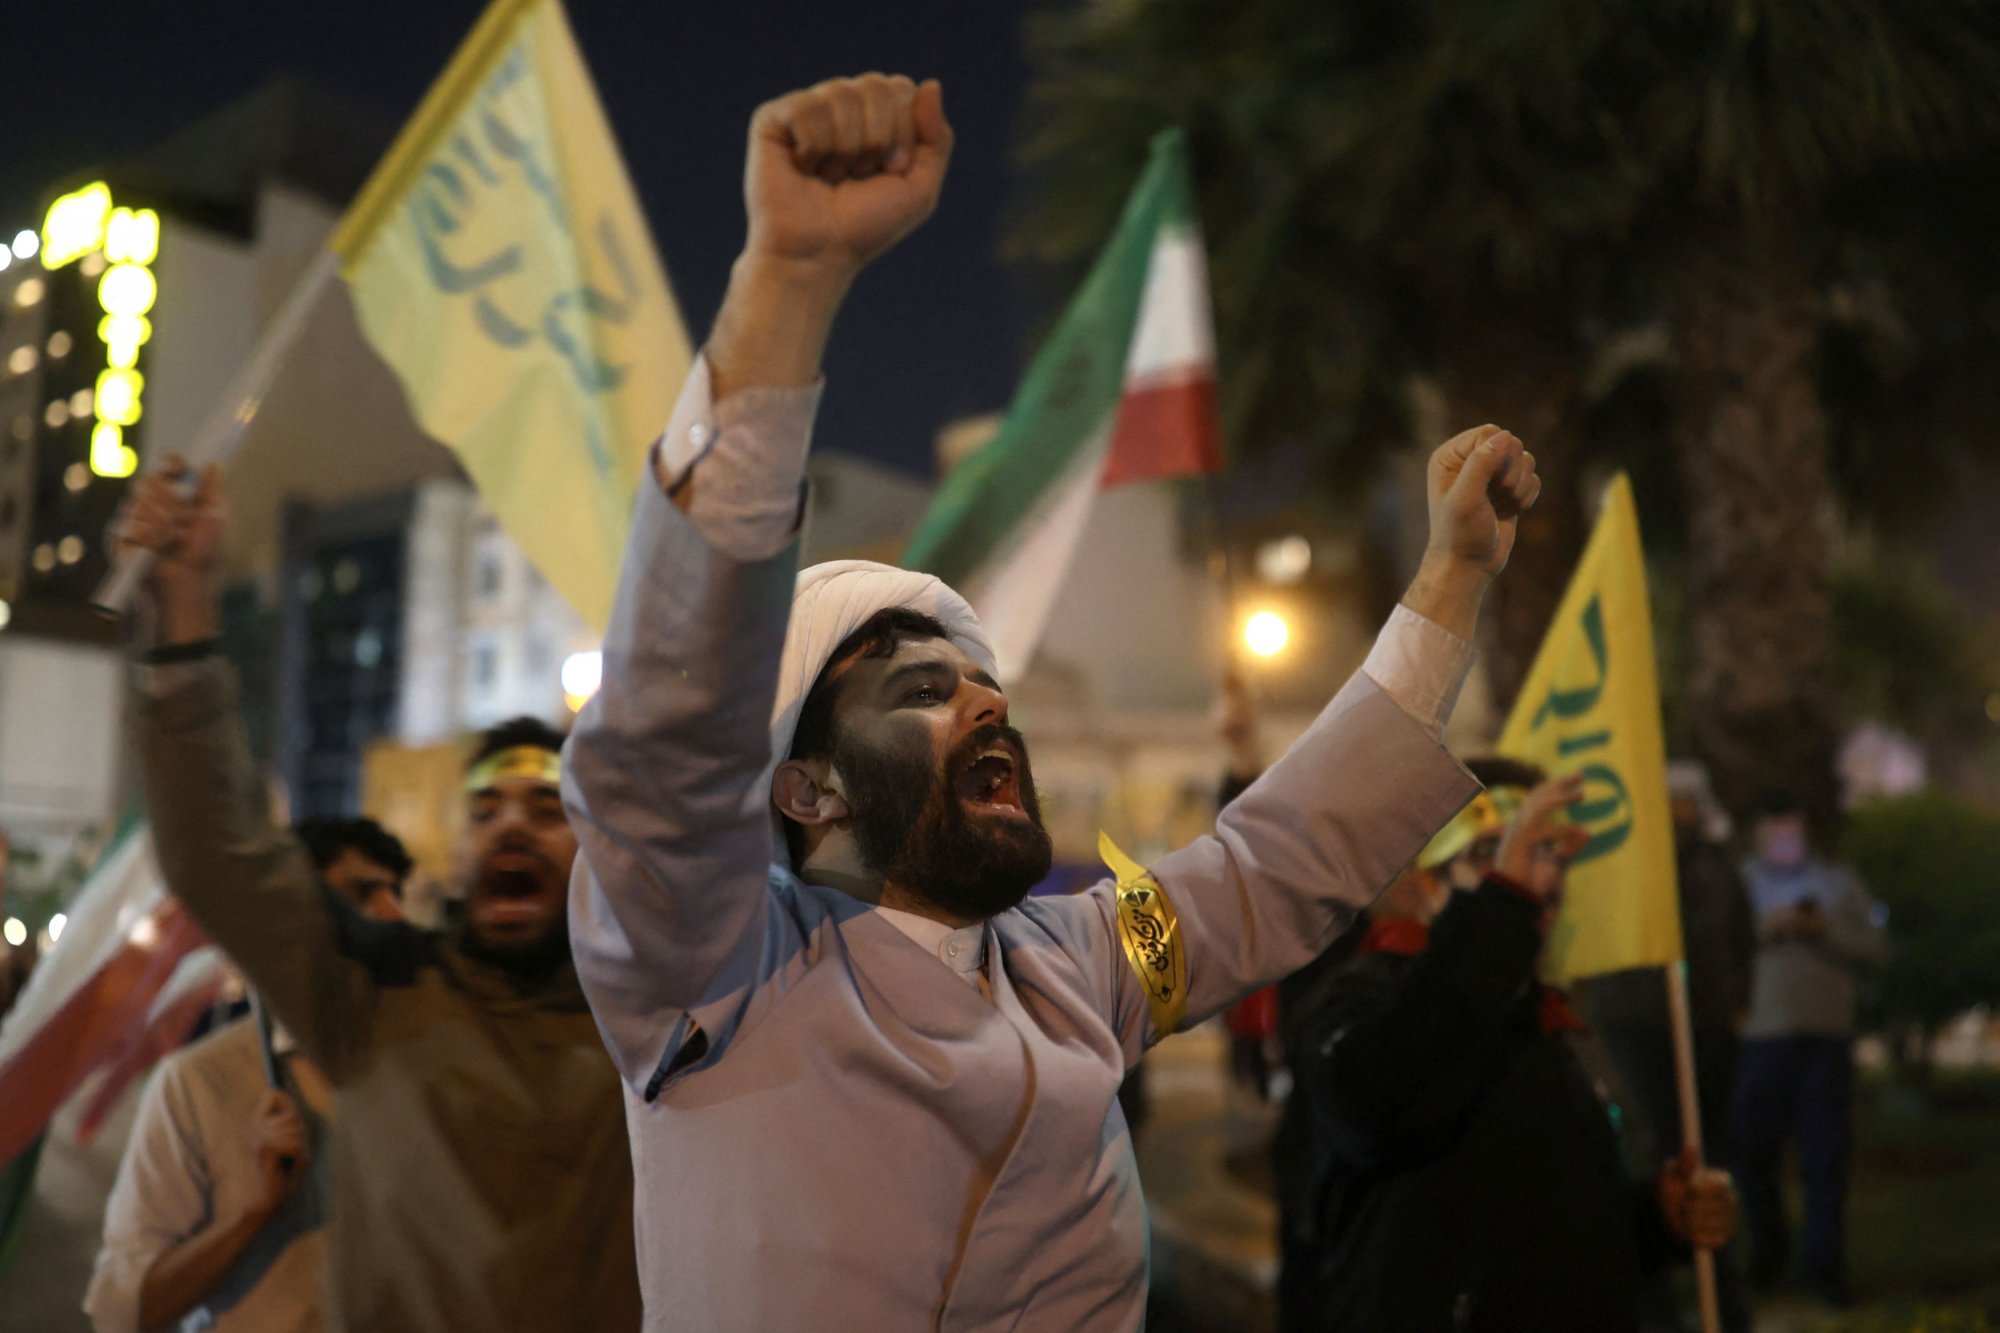 Μέση Ανατολή: Το μήνυμα της Τεχεράνης μέσω της επίθεσης - Πώς θα ανταποδώσει το Ισραήλ